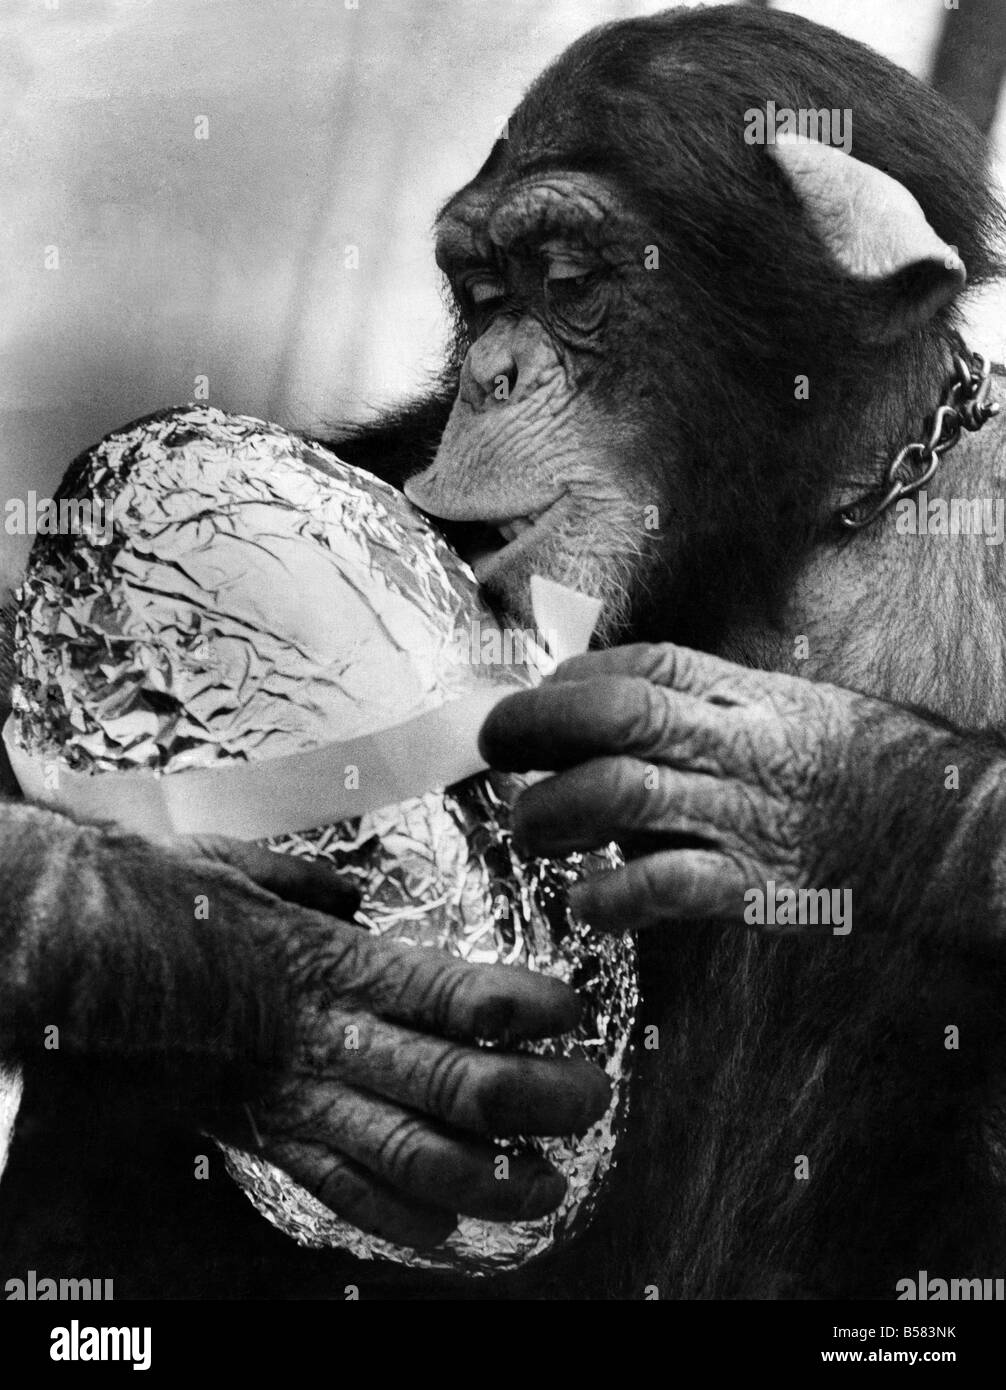 Charles der Schimpanse: Charles der 3-jährige Schimpanse - mit seinem Osterei. Er liebt Schokolade und wie Millionen anderer Kinder kann es kaum erwarten, in die Verpackung zu bekommen. Abgebildet in Longleat Charles ist der Familienhund Roger Cawley Manager von Longleat Löwen. April 1971 P004083 Stockfoto